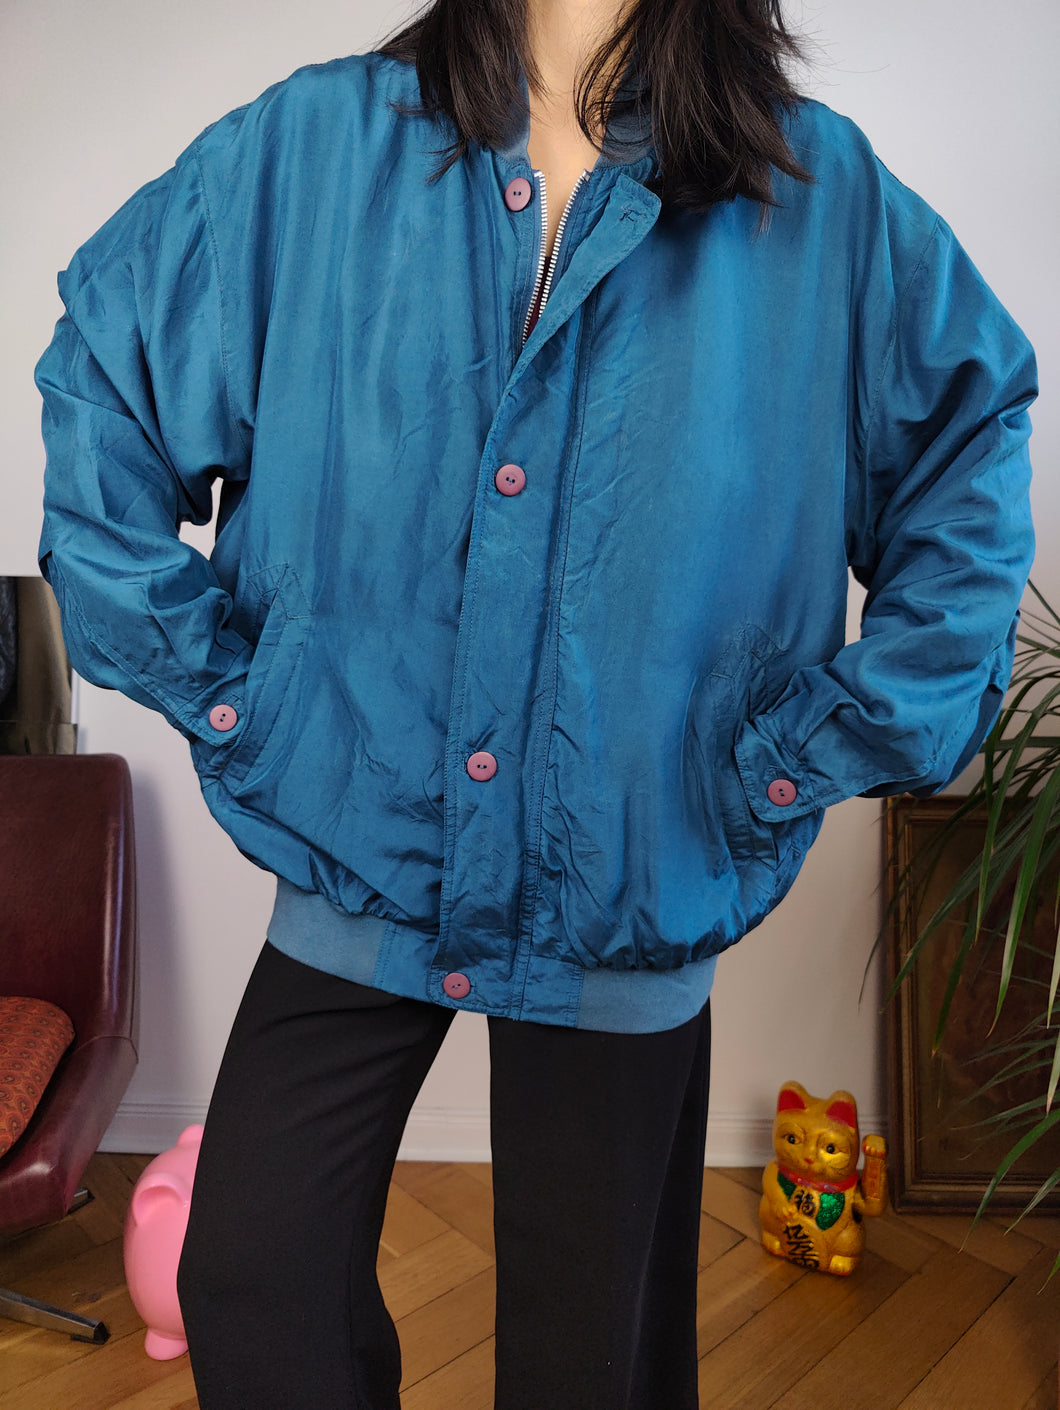 Vintage silk bomber jacket blouson blue light spring summer women unisex men 50 L